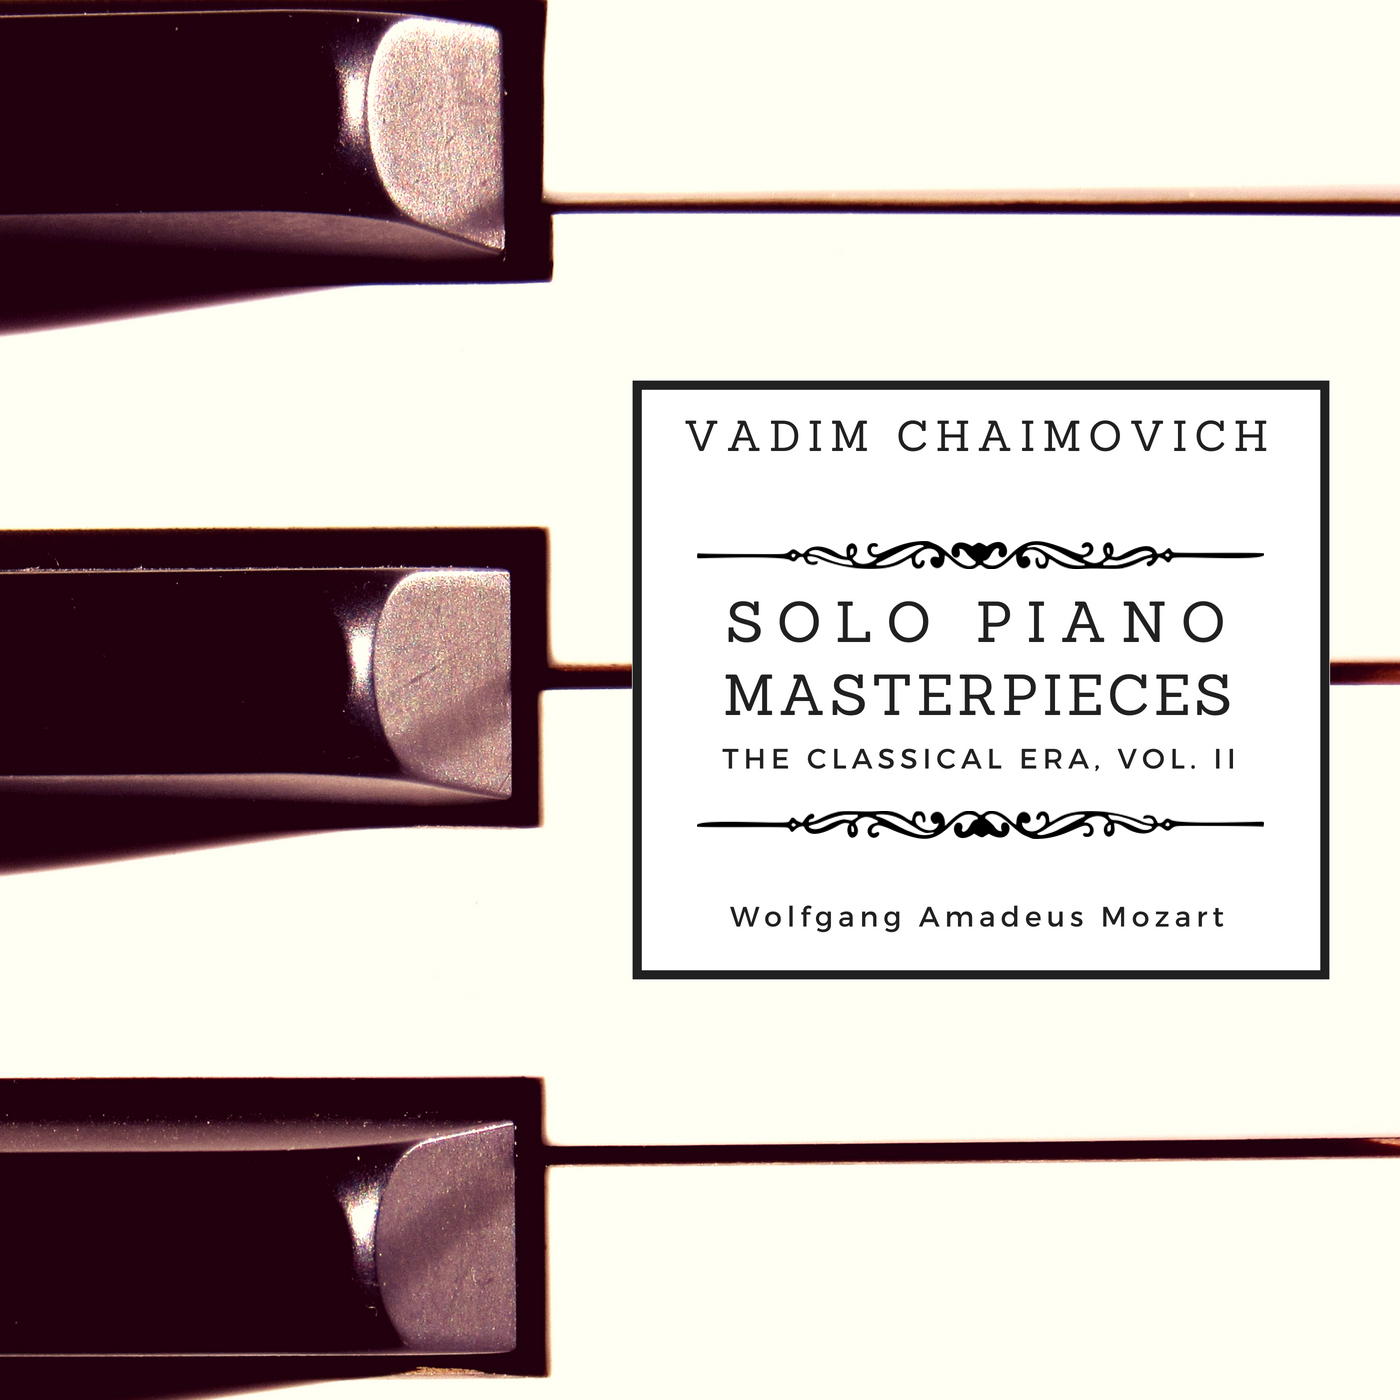 Solo Piano Masterpieces: The Classical Era Vol. II